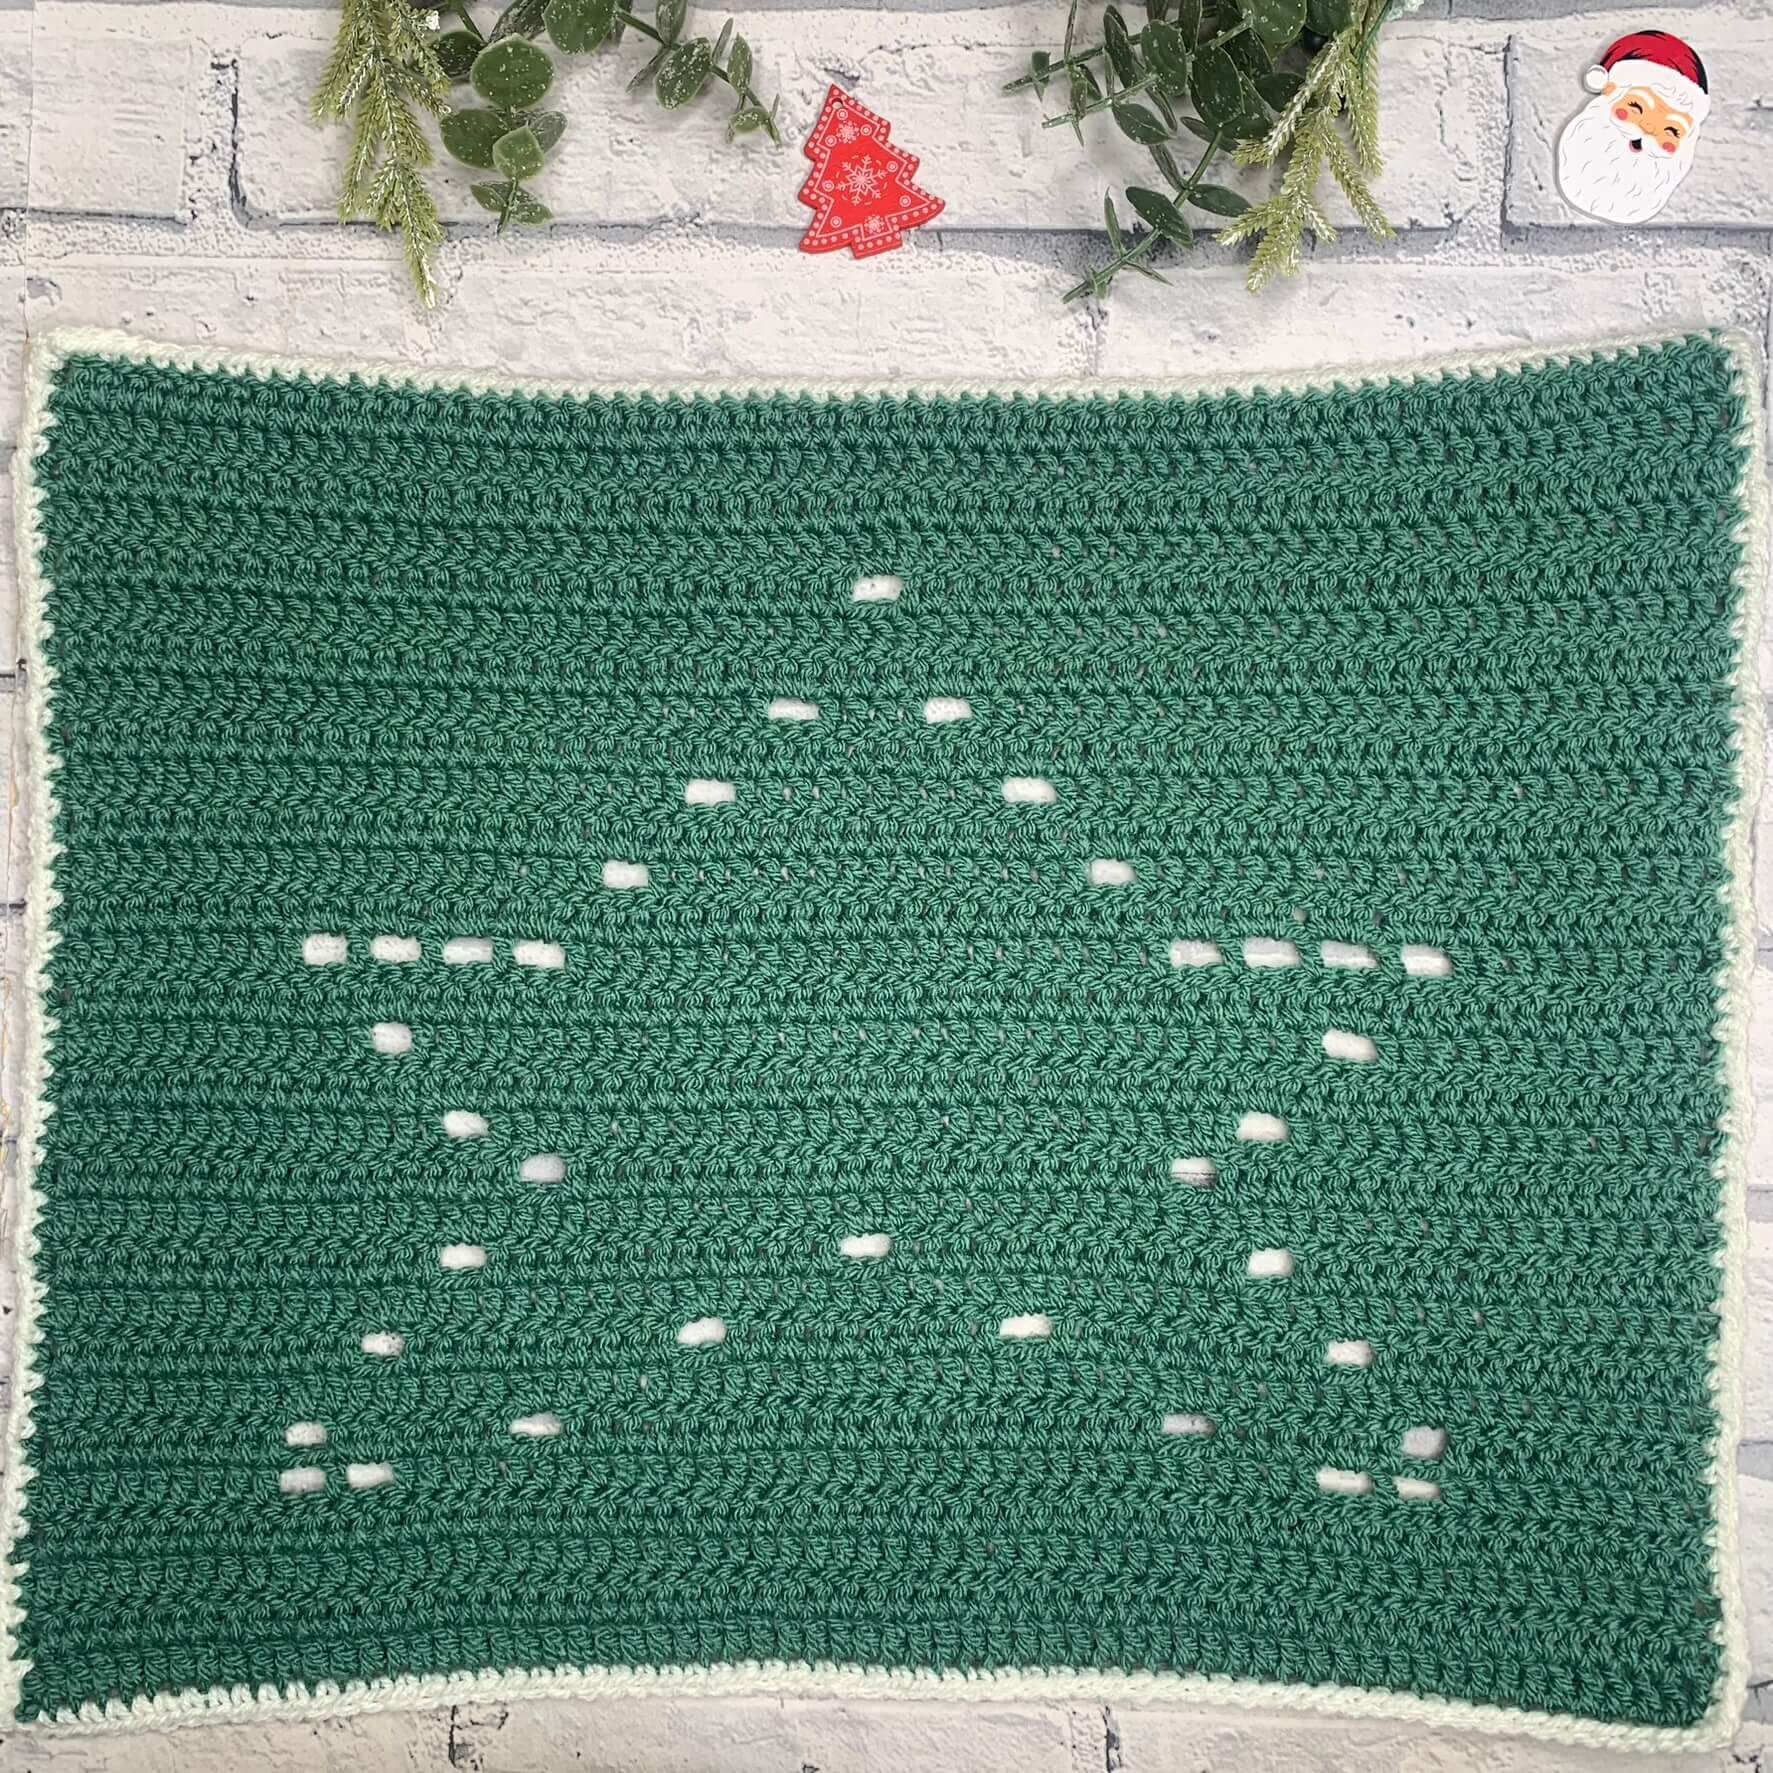 Filet Crochet Star for Christmas Pattern